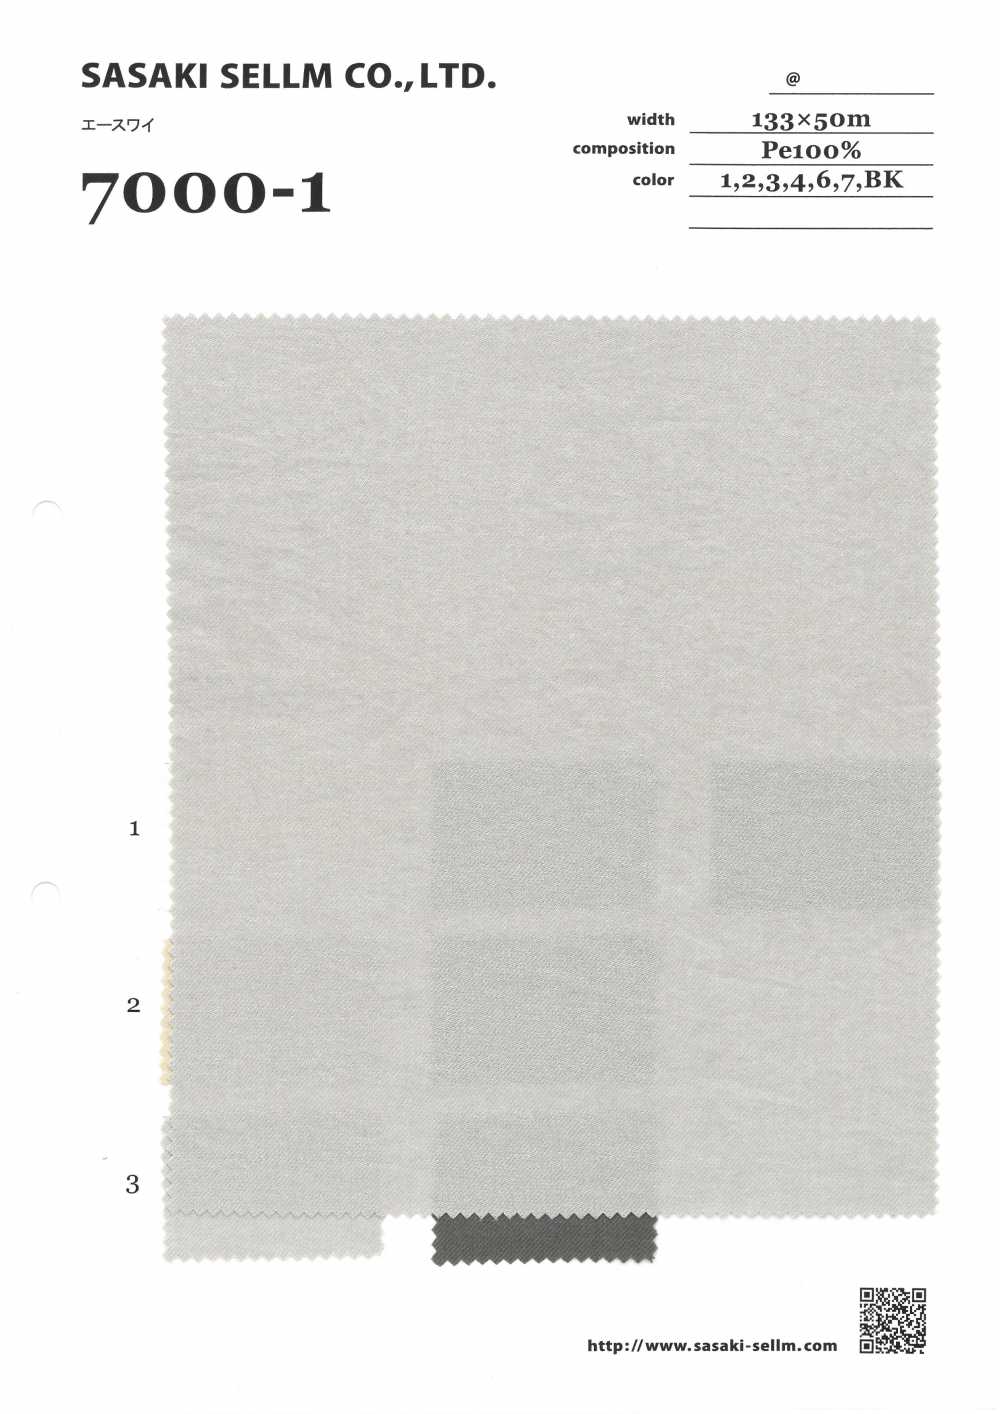 7000-1 Ace Wai[Textile / Fabric] SASAKISELLM